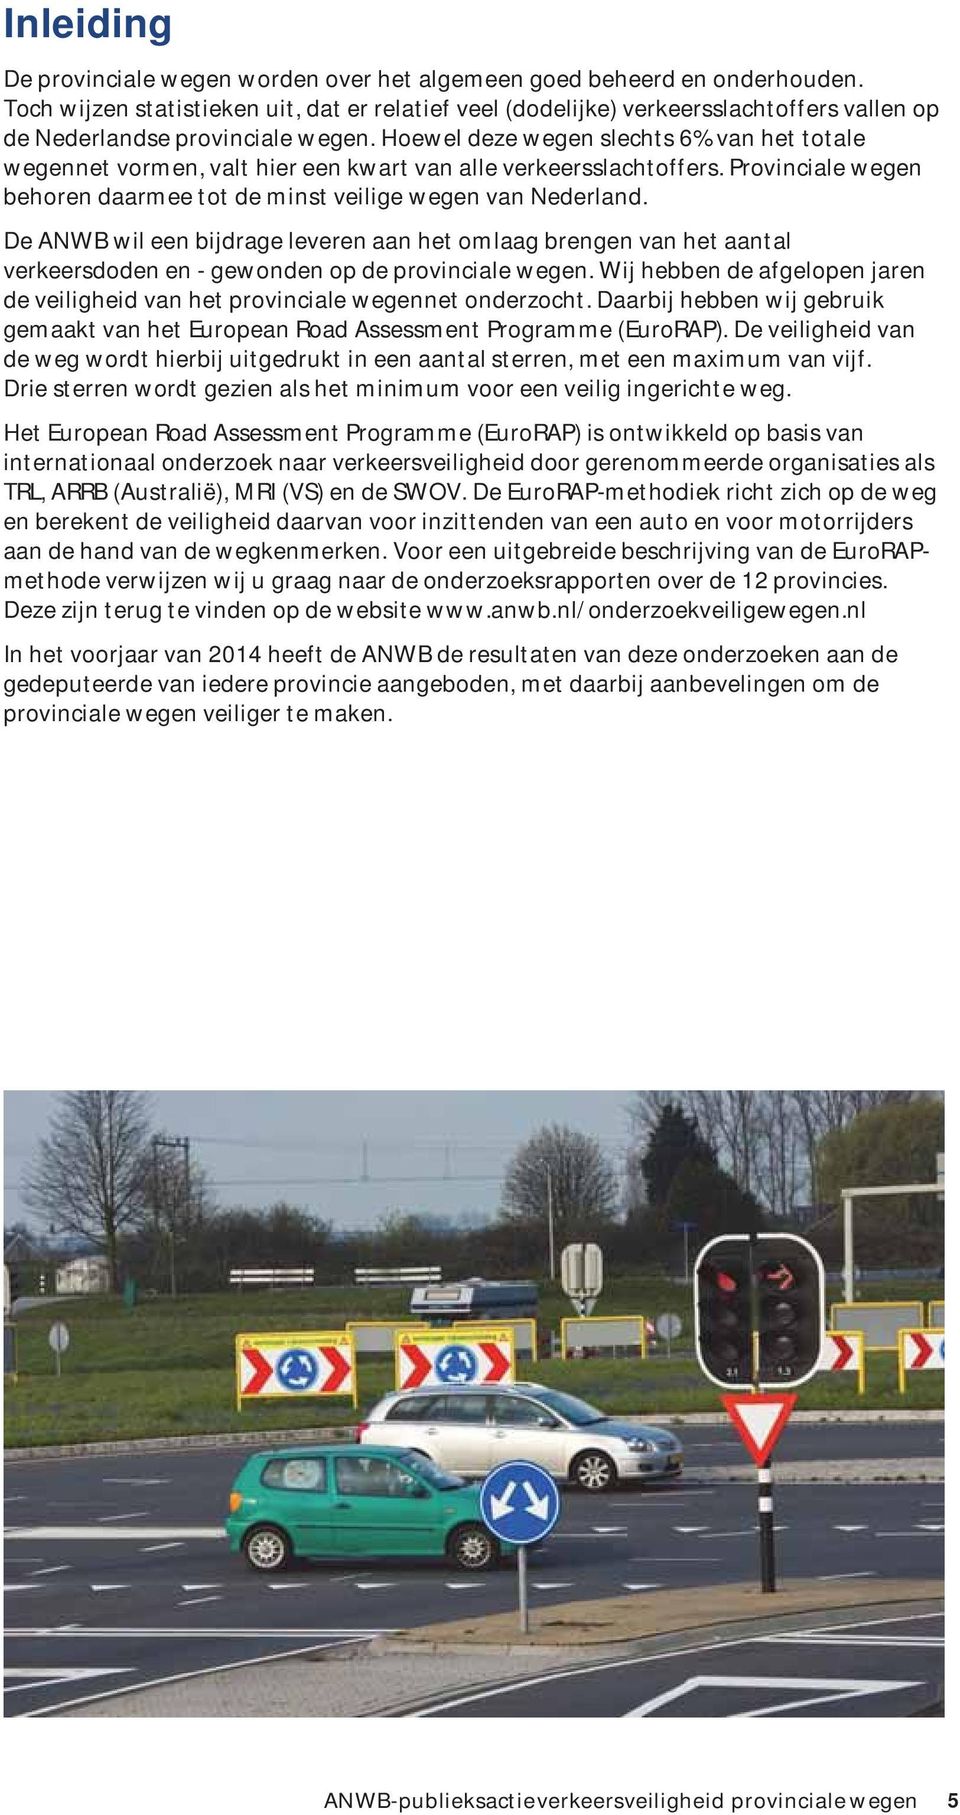 Hoewel deze wegen slechts 6% van het totale wegennet vormen, valt hier een kwart van alle verkeersslachtoffers. Provinciale wegen behoren daarmee tot de minst veilige wegen van Nederland.